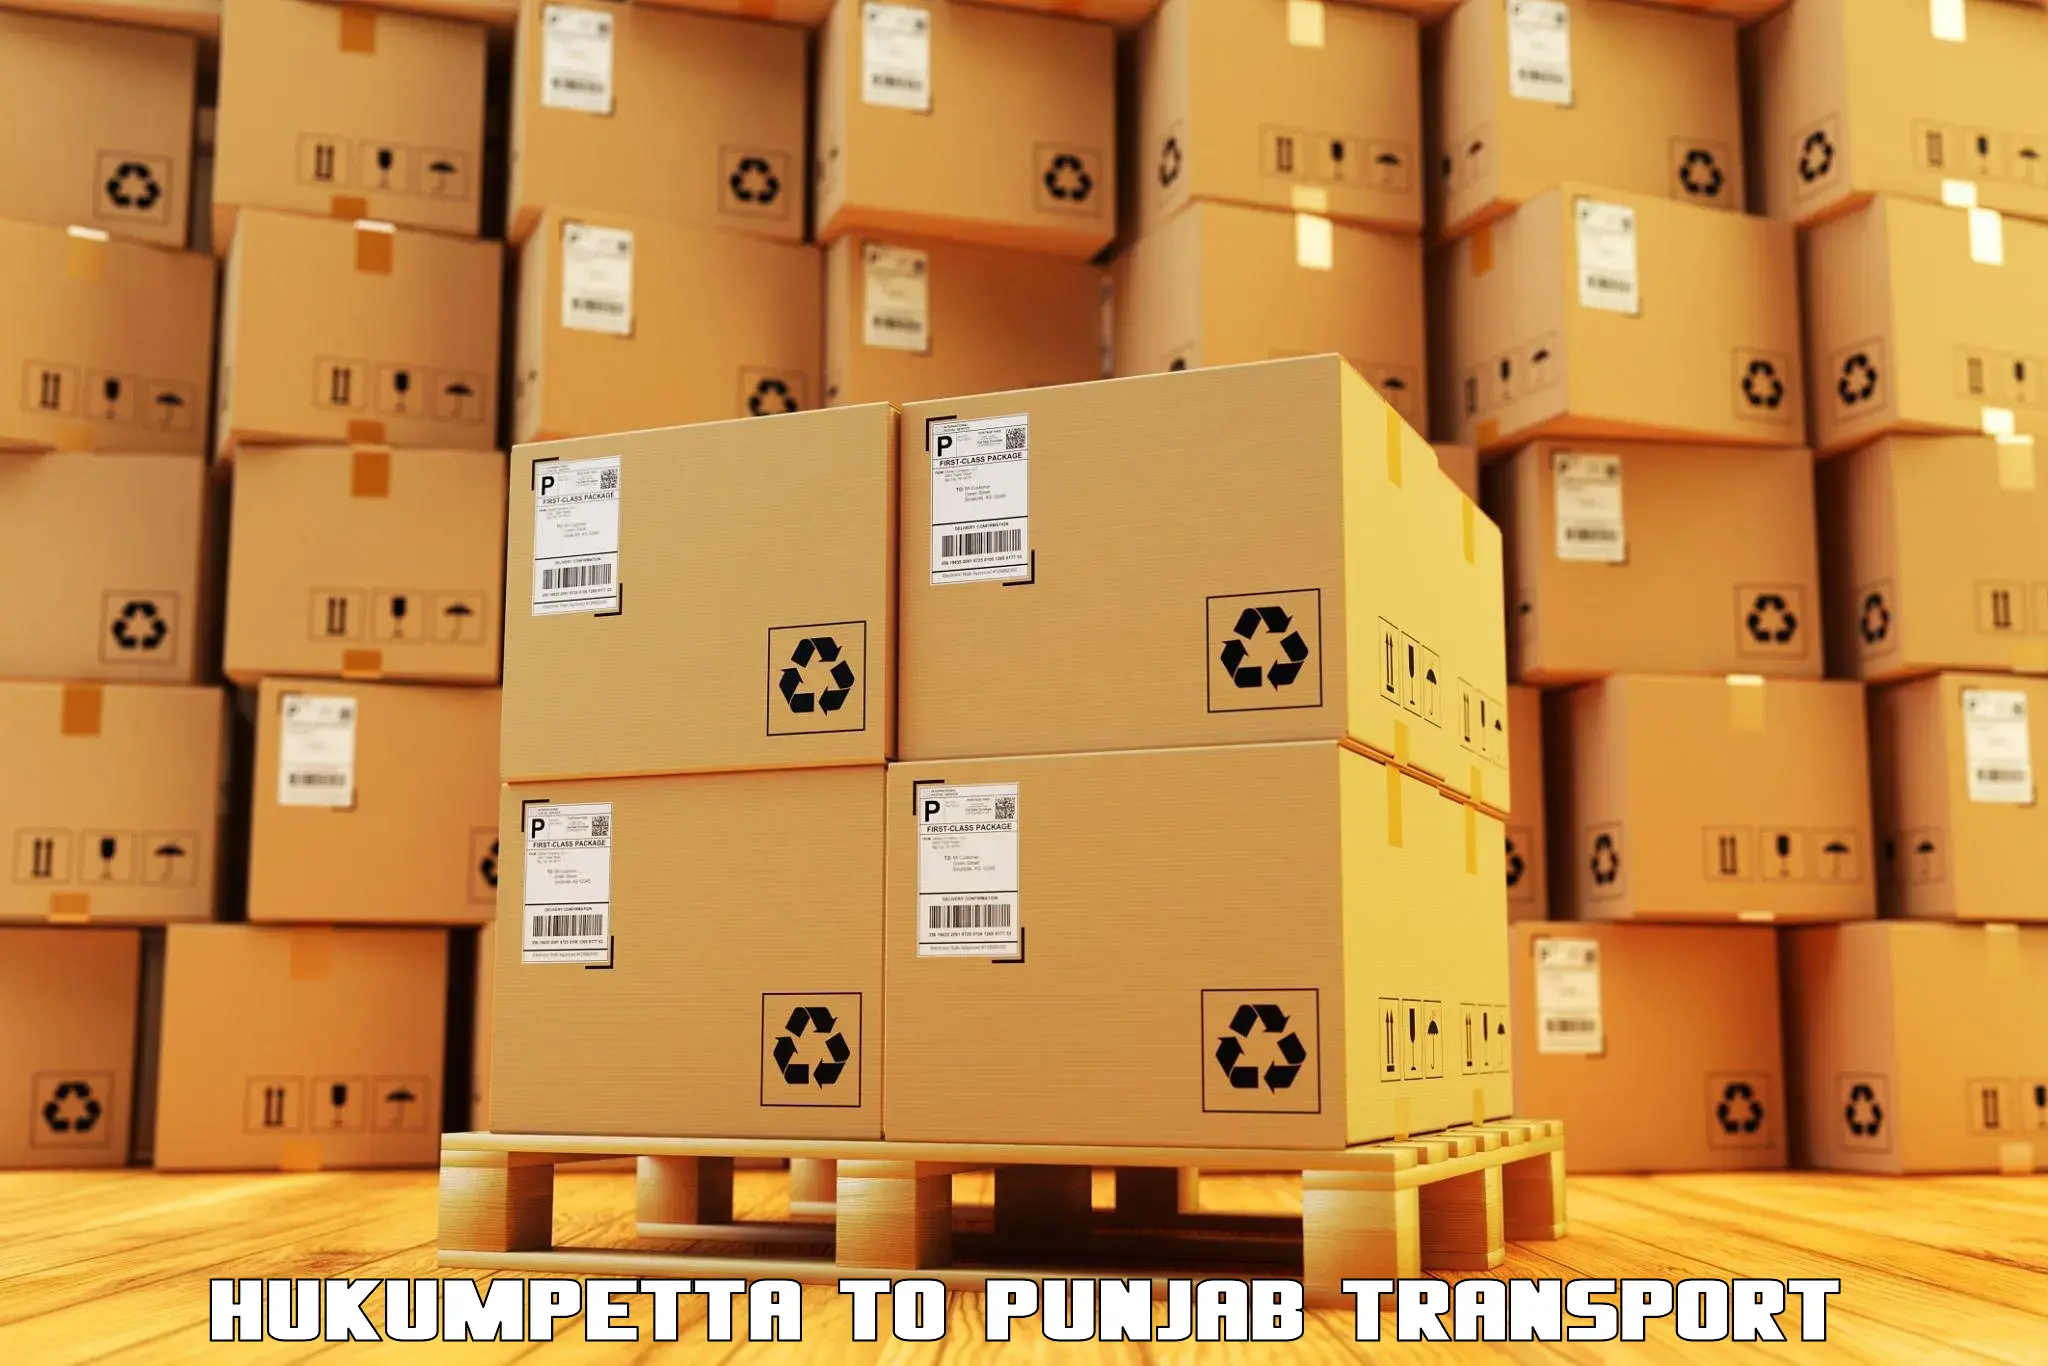 Parcel transport services Hukumpetta to Kotkapura